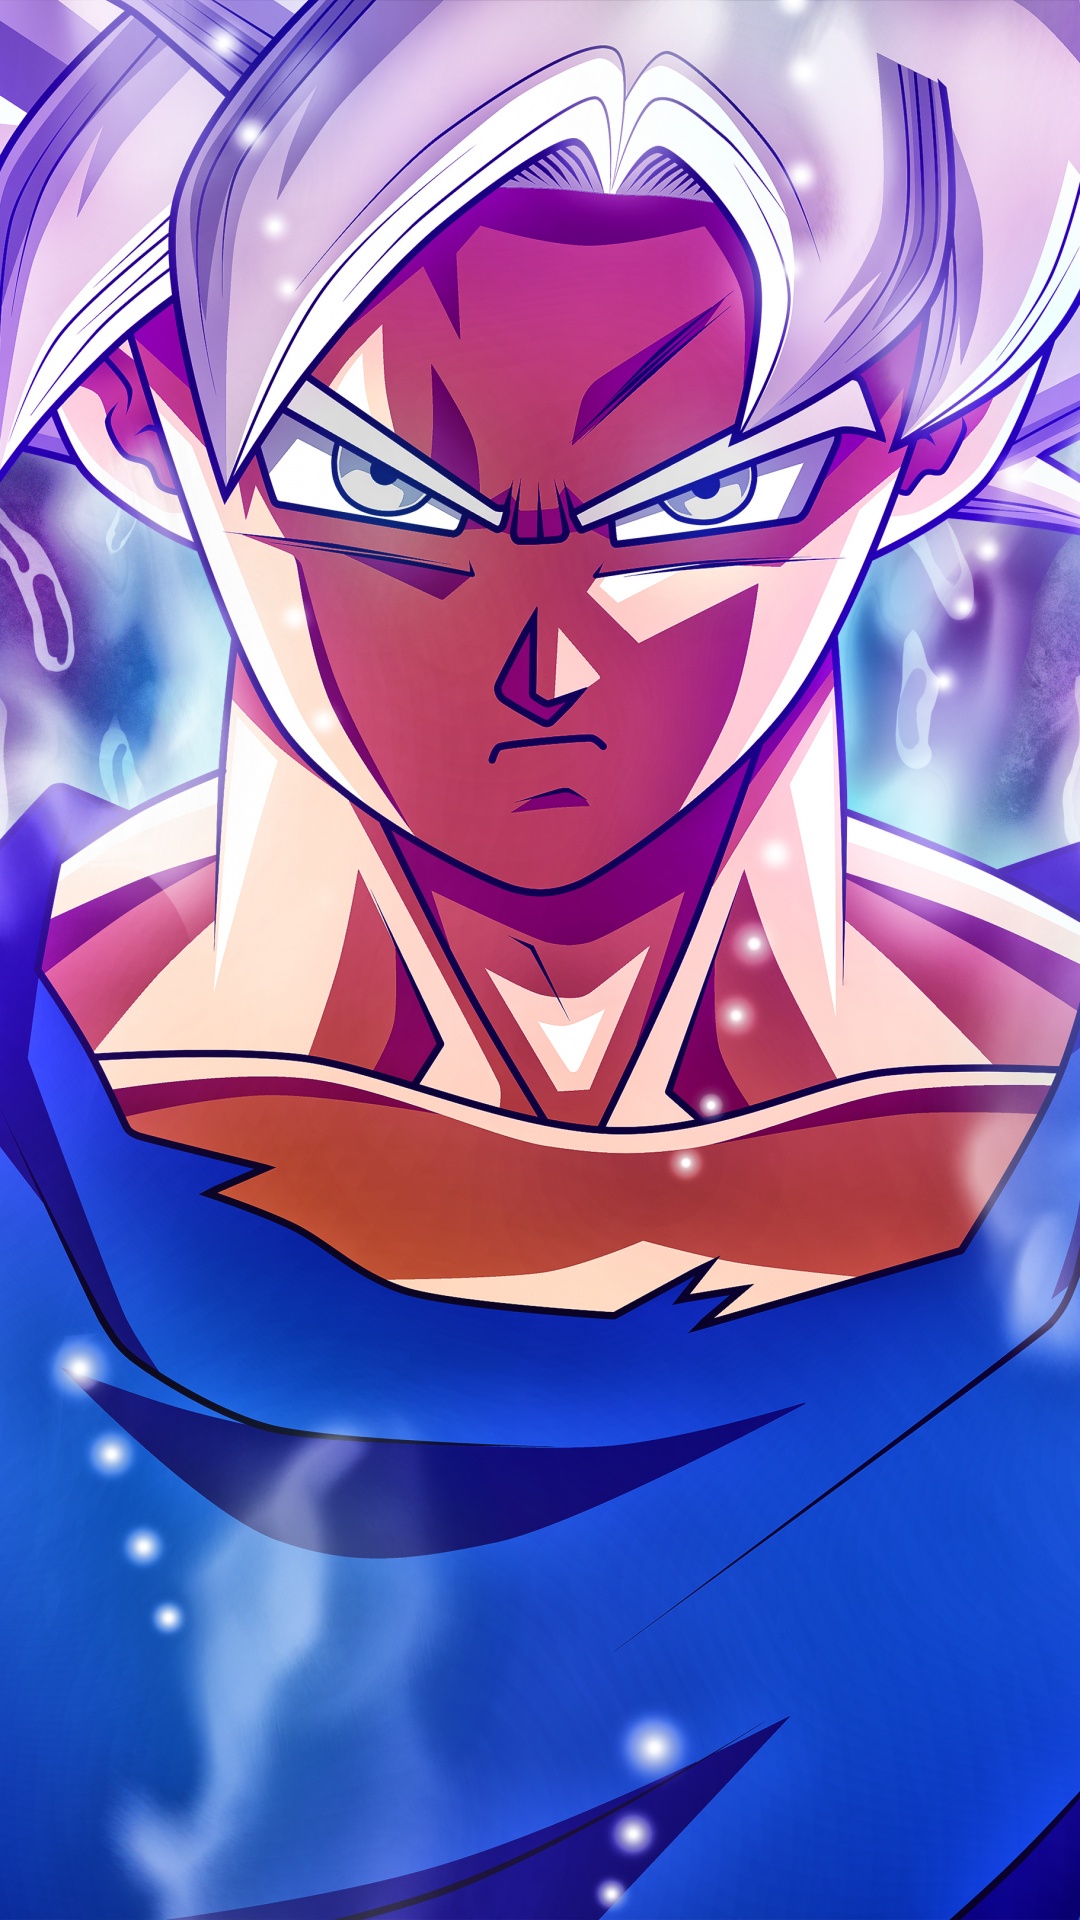 Blauhaariger Männlicher Anime-Charakter. Wallpaper in 1080x1920 Resolution